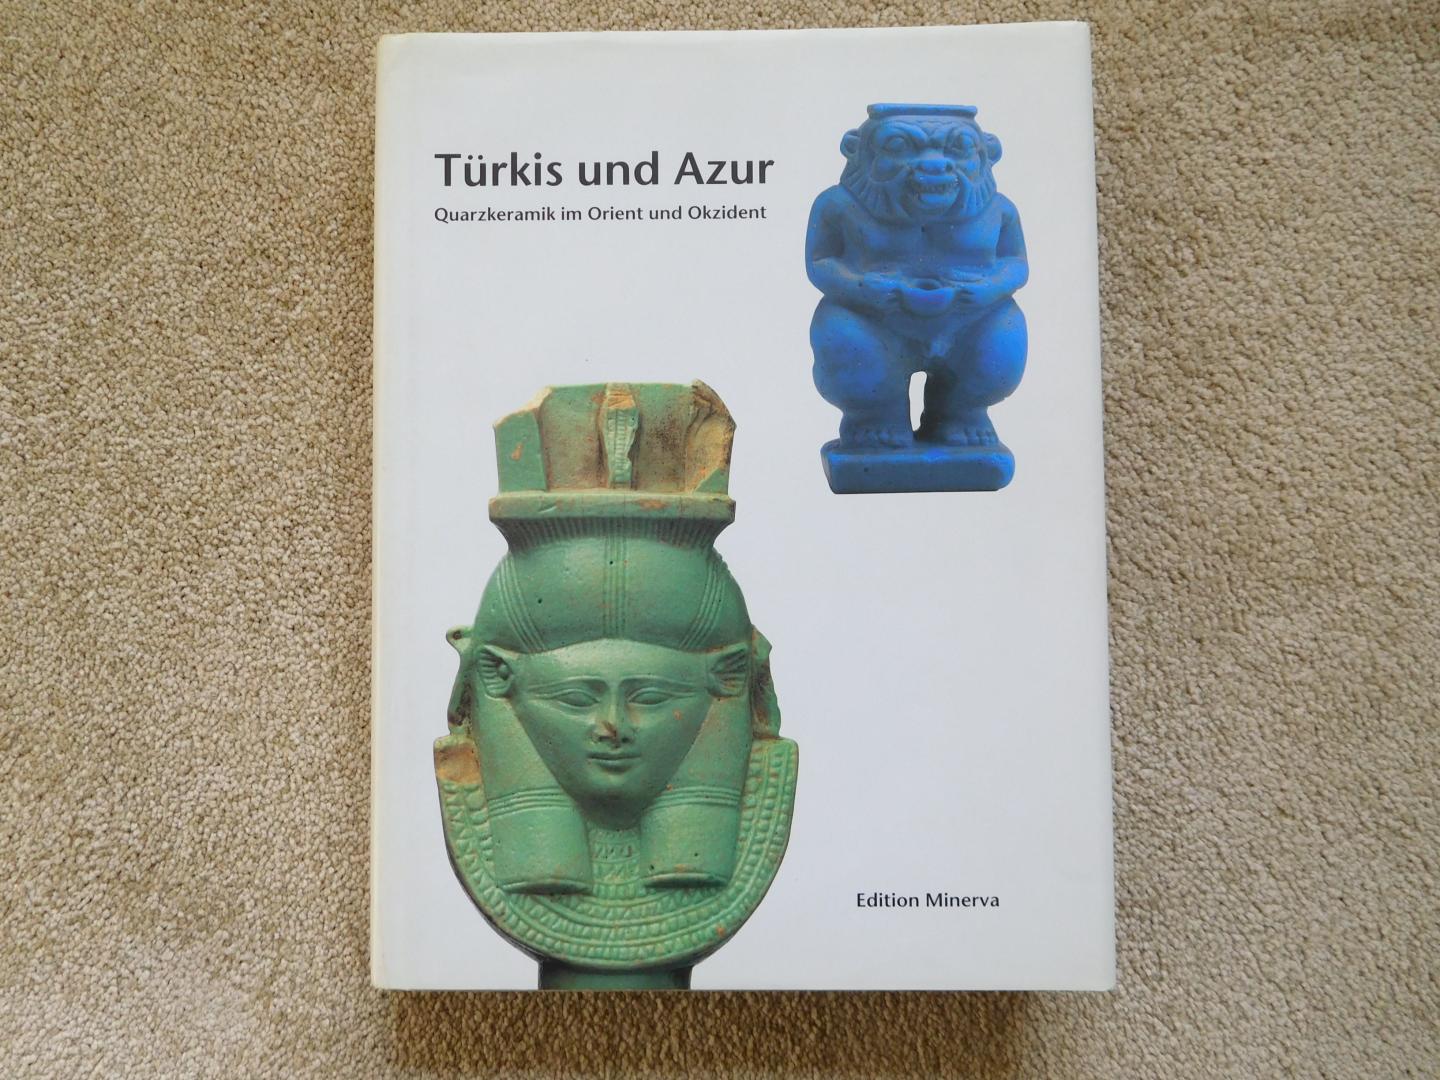 Peter Gercke (red.) - Türkis und Azur, quarzkeramik im Orient und Okzident